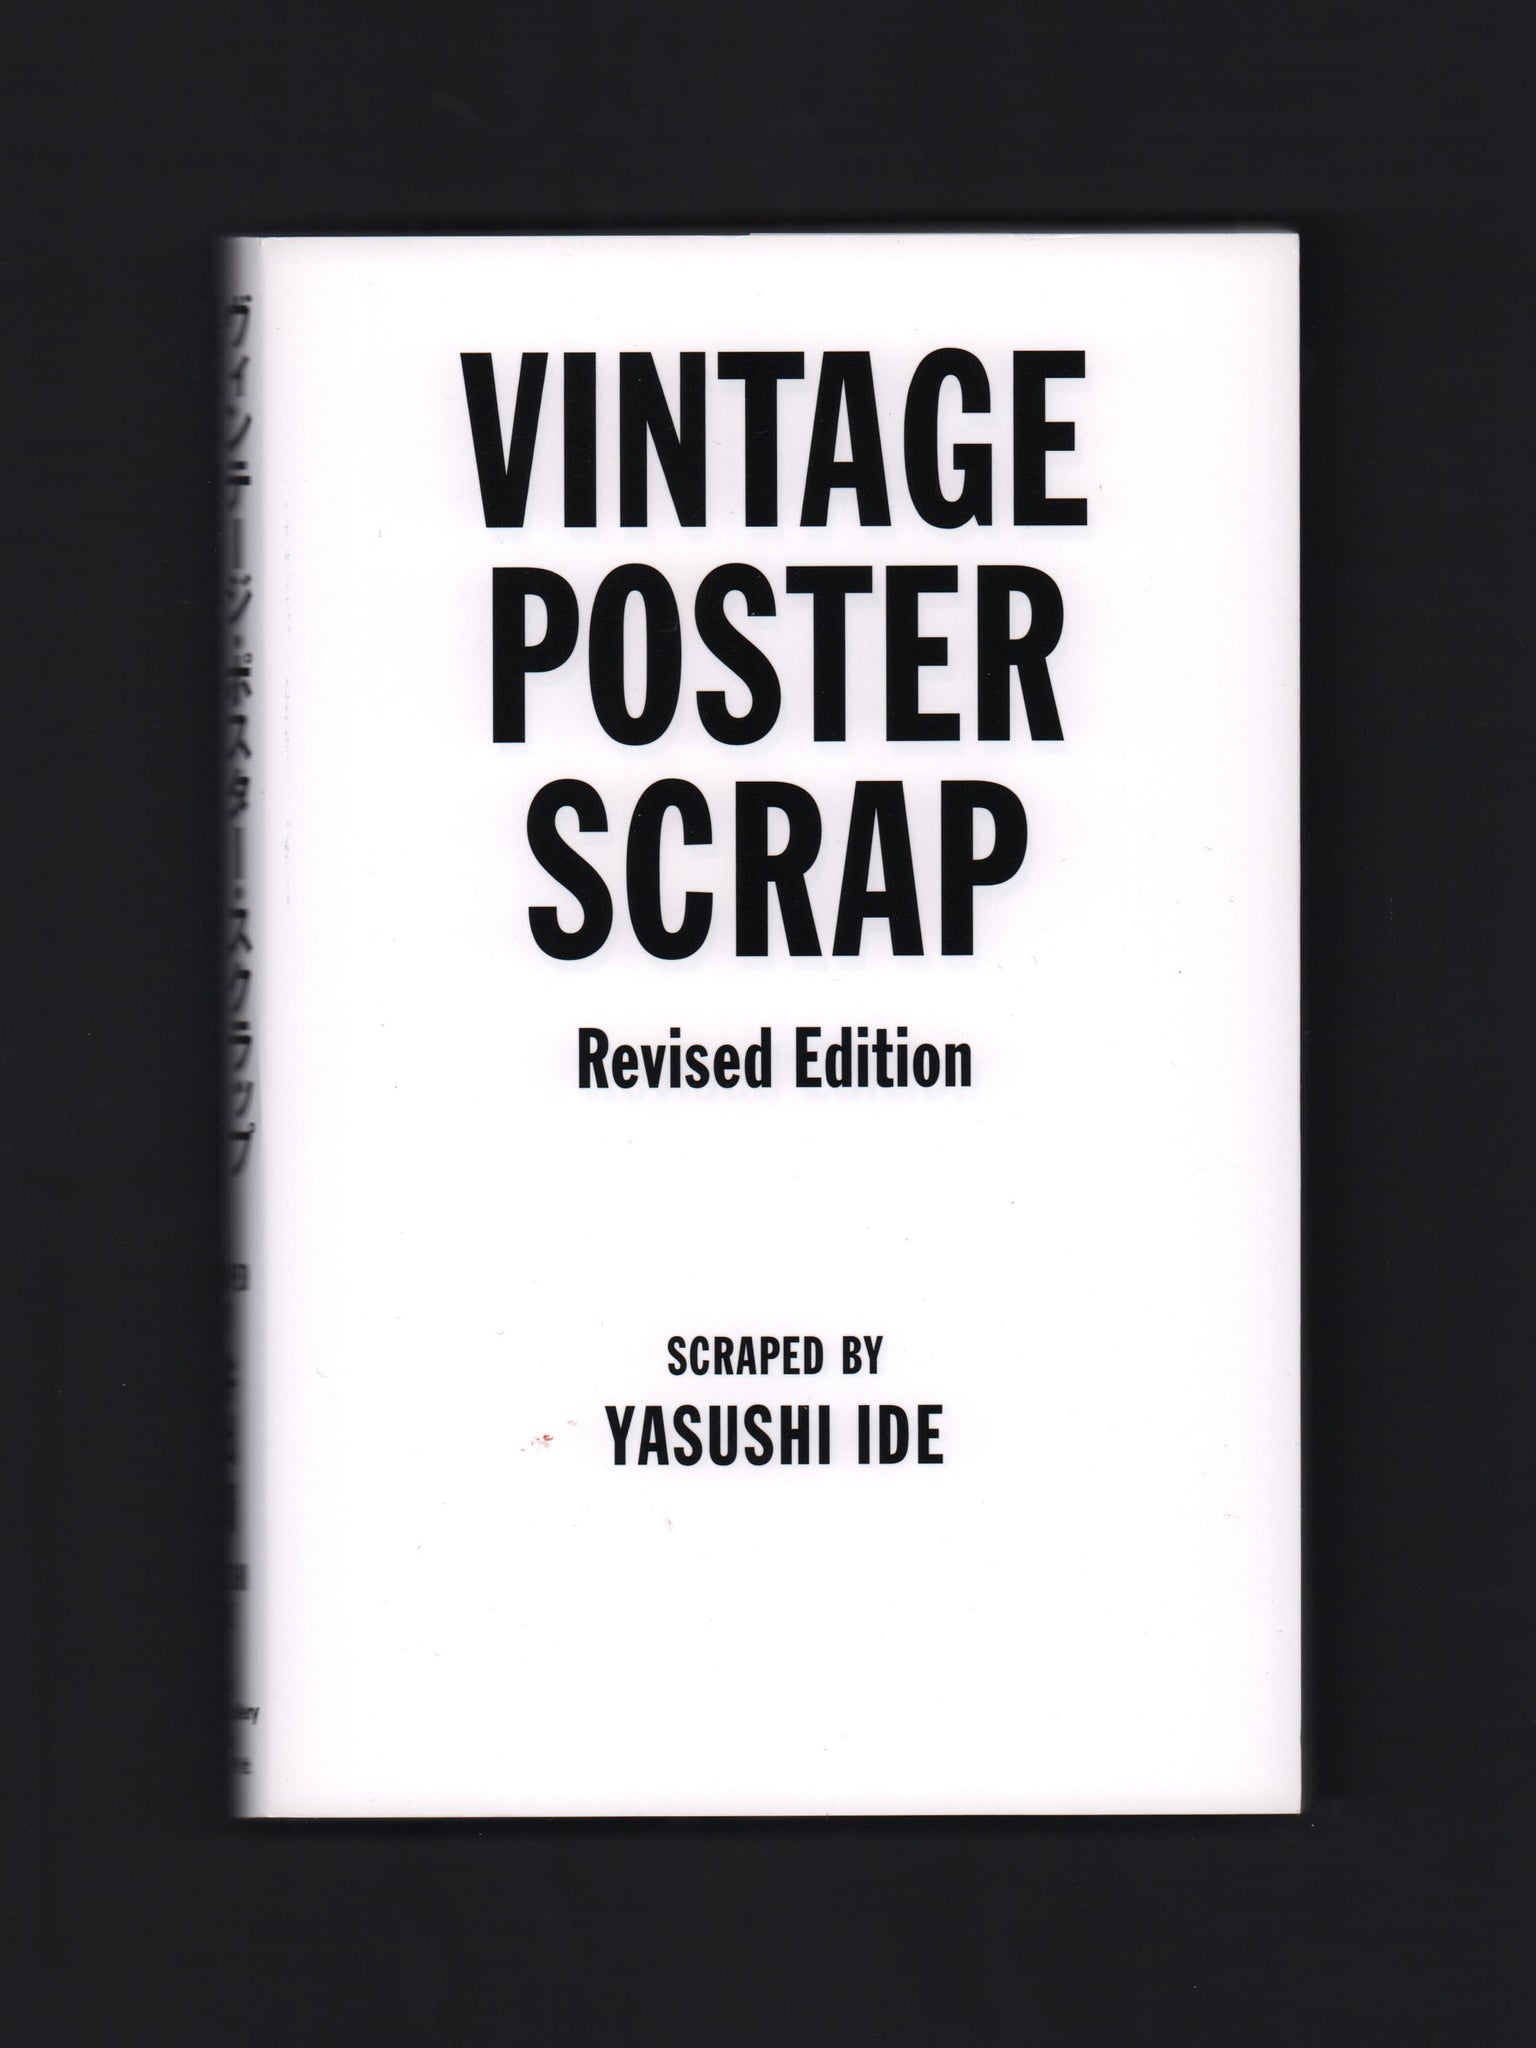 Vintage Poster Scrap revised edition [Yasushi Ide 2020]